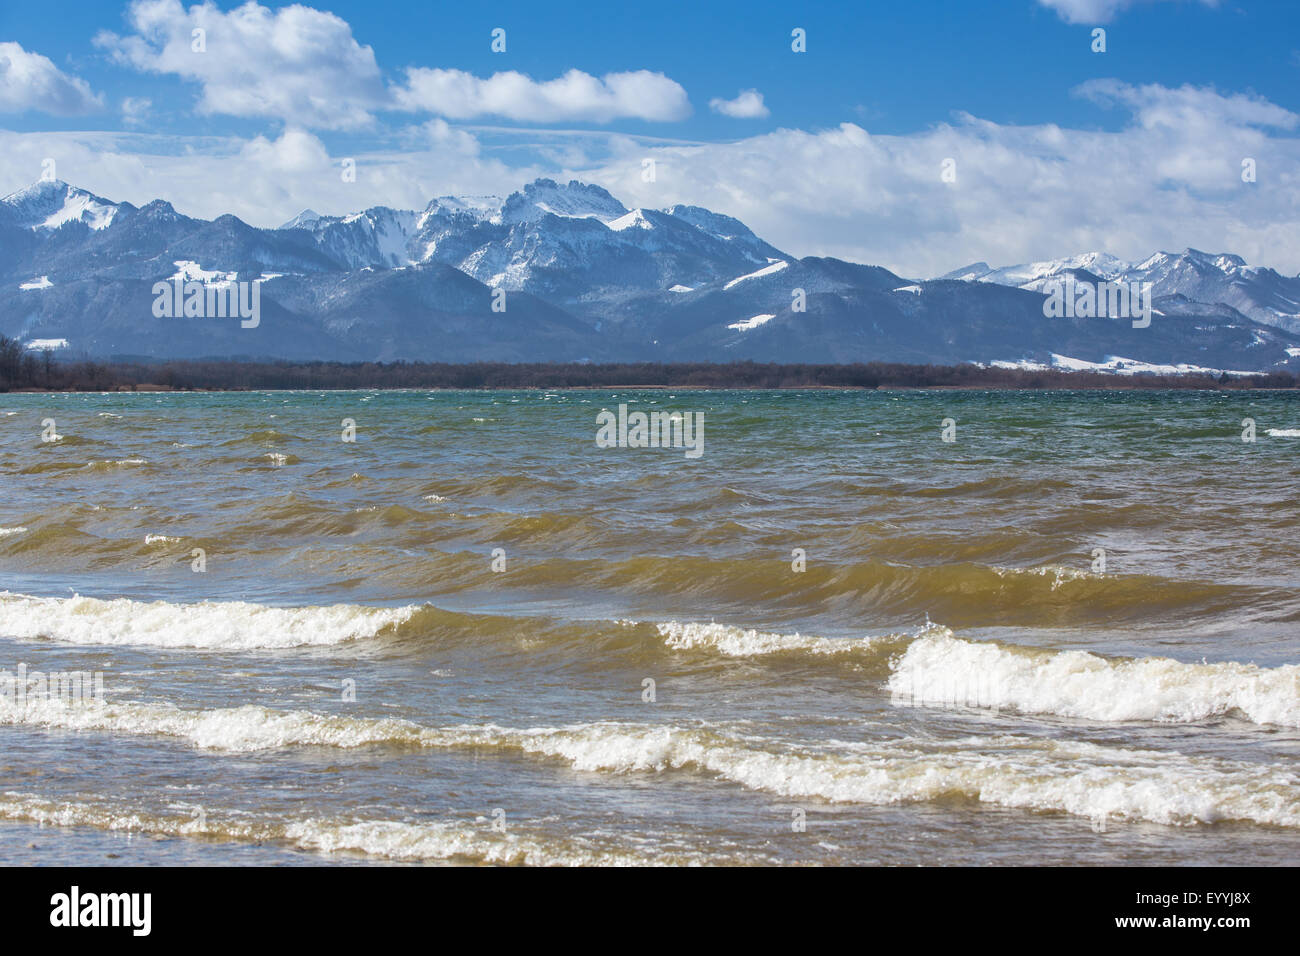 Le foehn, tempête dans les Alpes du nord en venant du sud, sur le lac de Chiemsee, les Alpes en arrière-plan, l'Allemagne, la Bavière, le lac de Chiemsee Banque D'Images